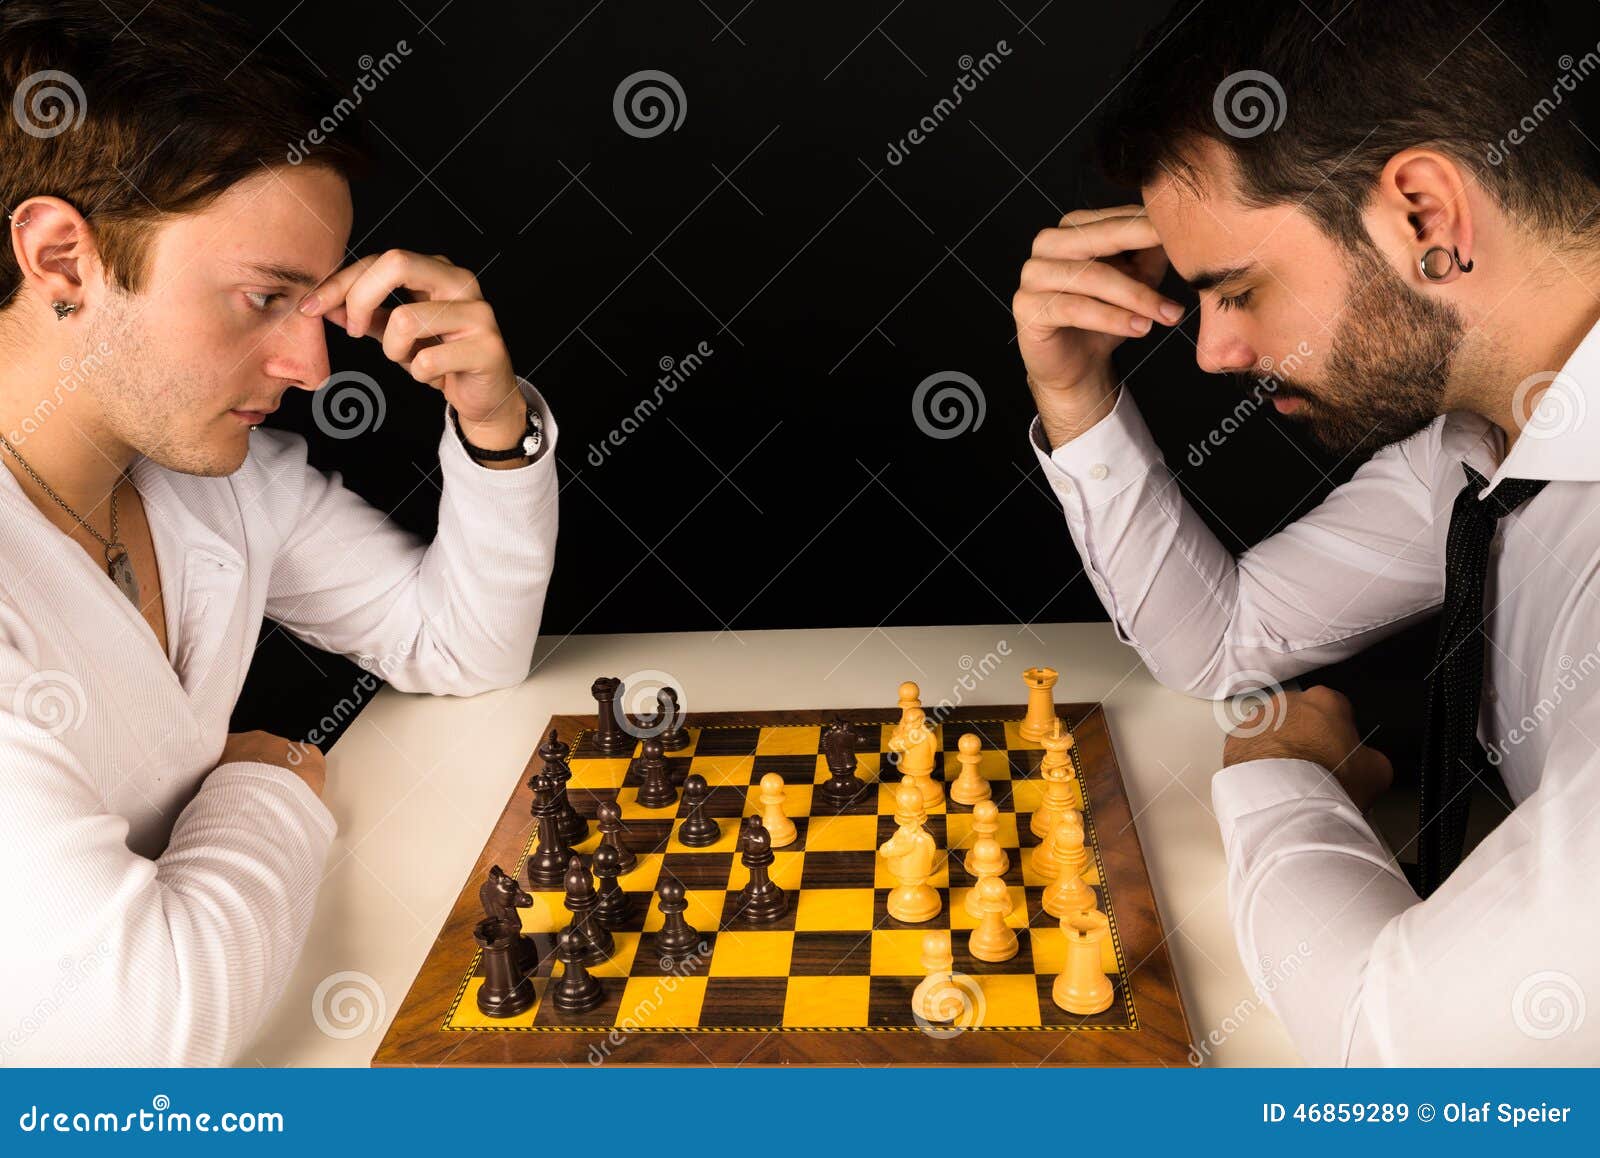 Увлечься игрой в шахматы. Парень играющий в шахматы. Увлекается игрой в шахматы. Мужчина за игрой в шахматы. Мужчина с шахматами.